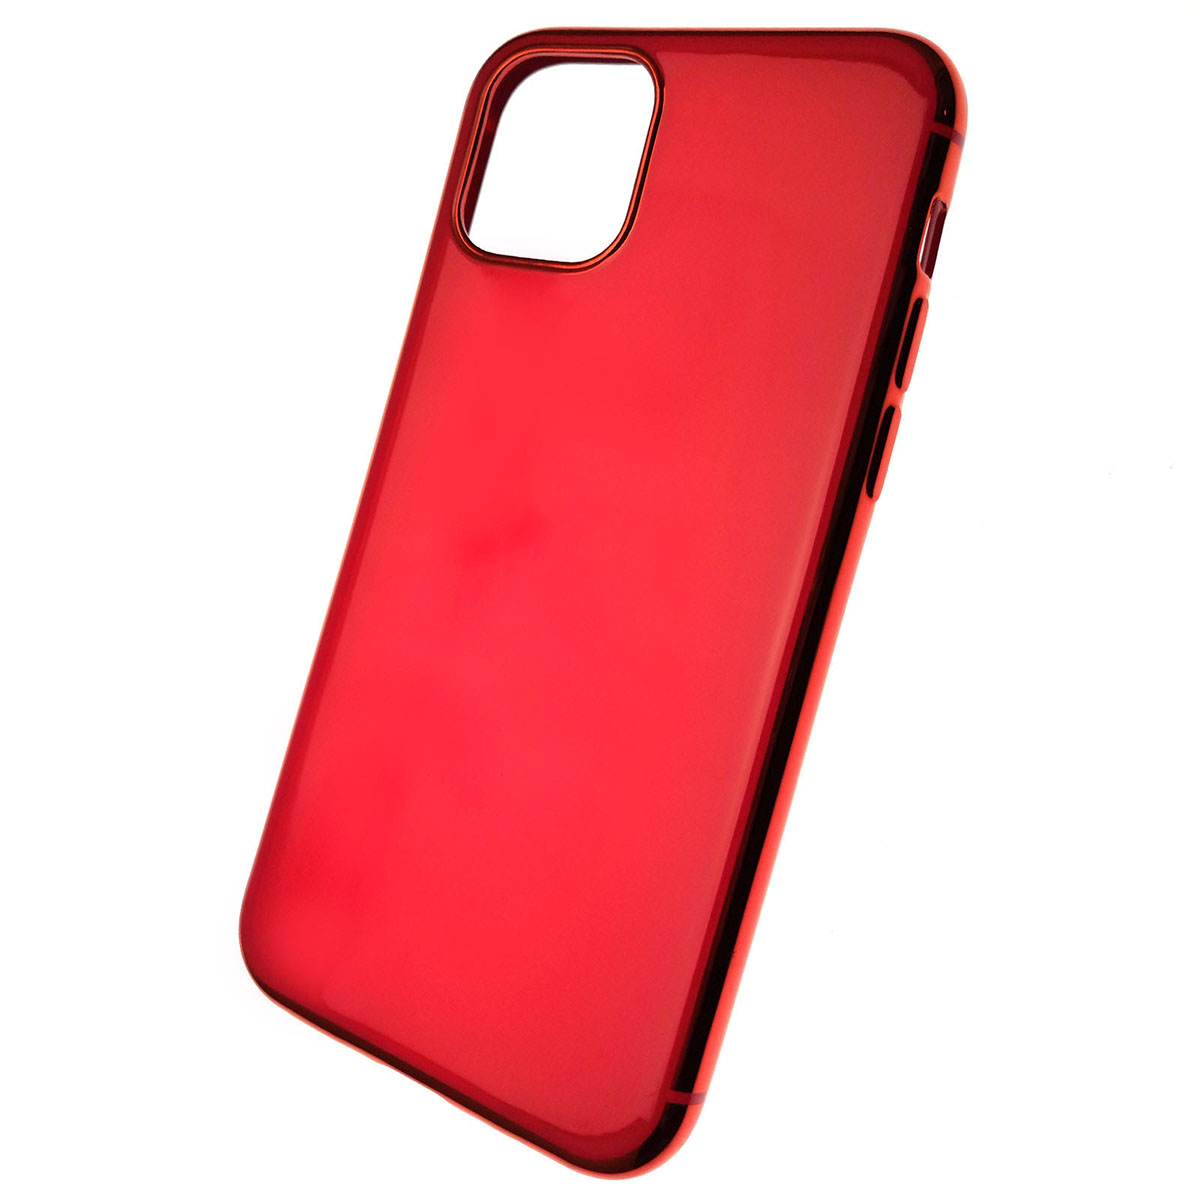 Чехол накладка для APPLE iPhone 11 Pro 2019, силикон, глянец, цвет красный.